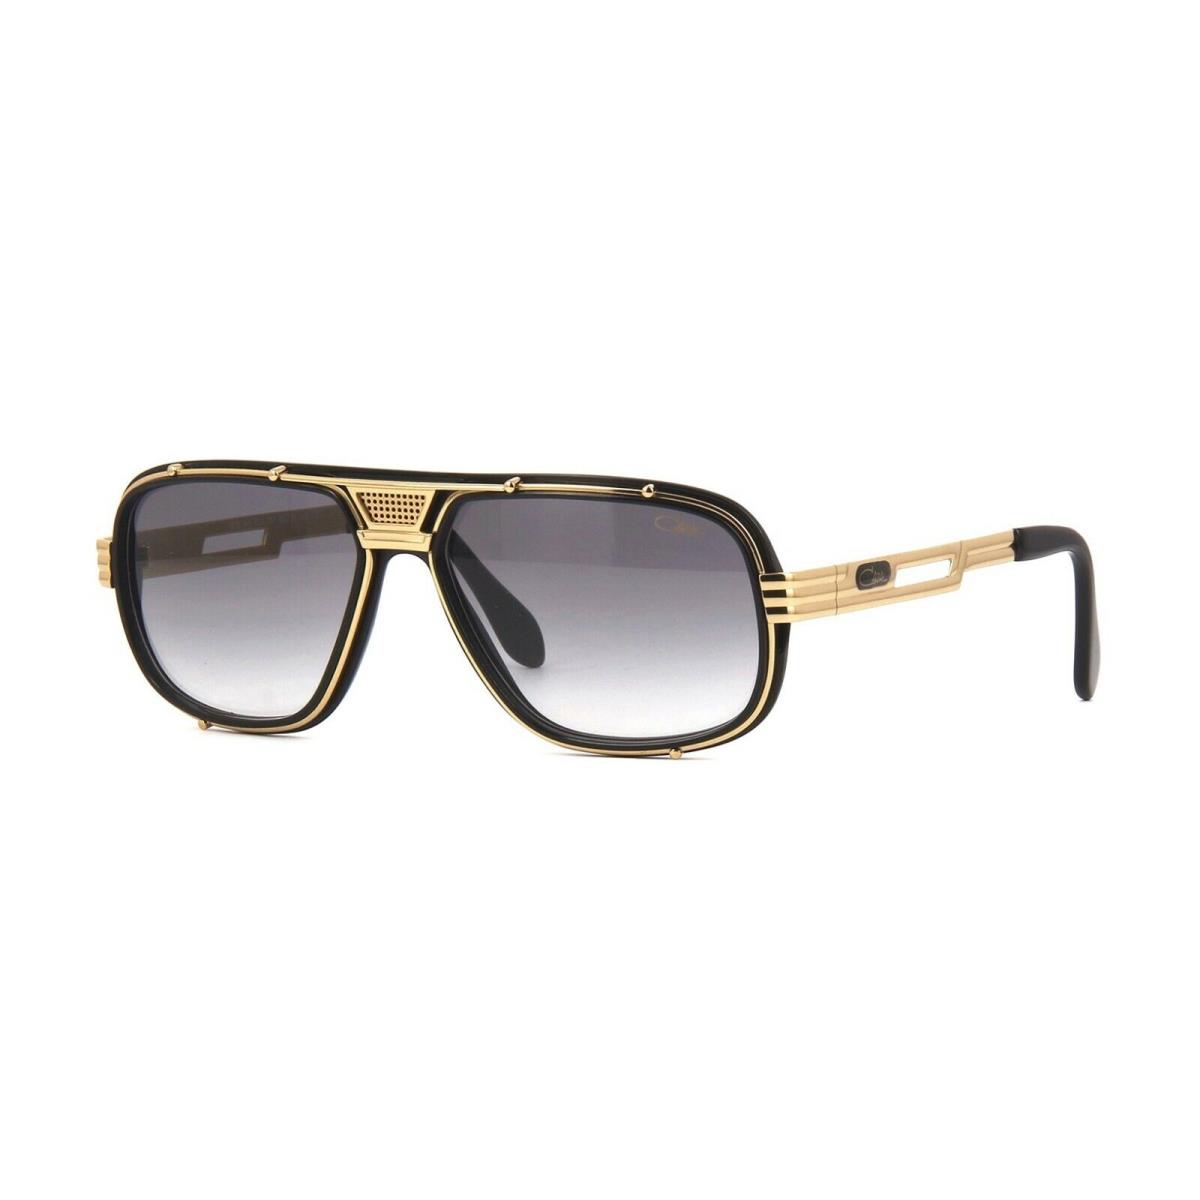 Cazal Legends 665/3 Black 18KT Gold/grey 001 Sunglasses - Frame: Black 18KT Gold, Lens: Grey